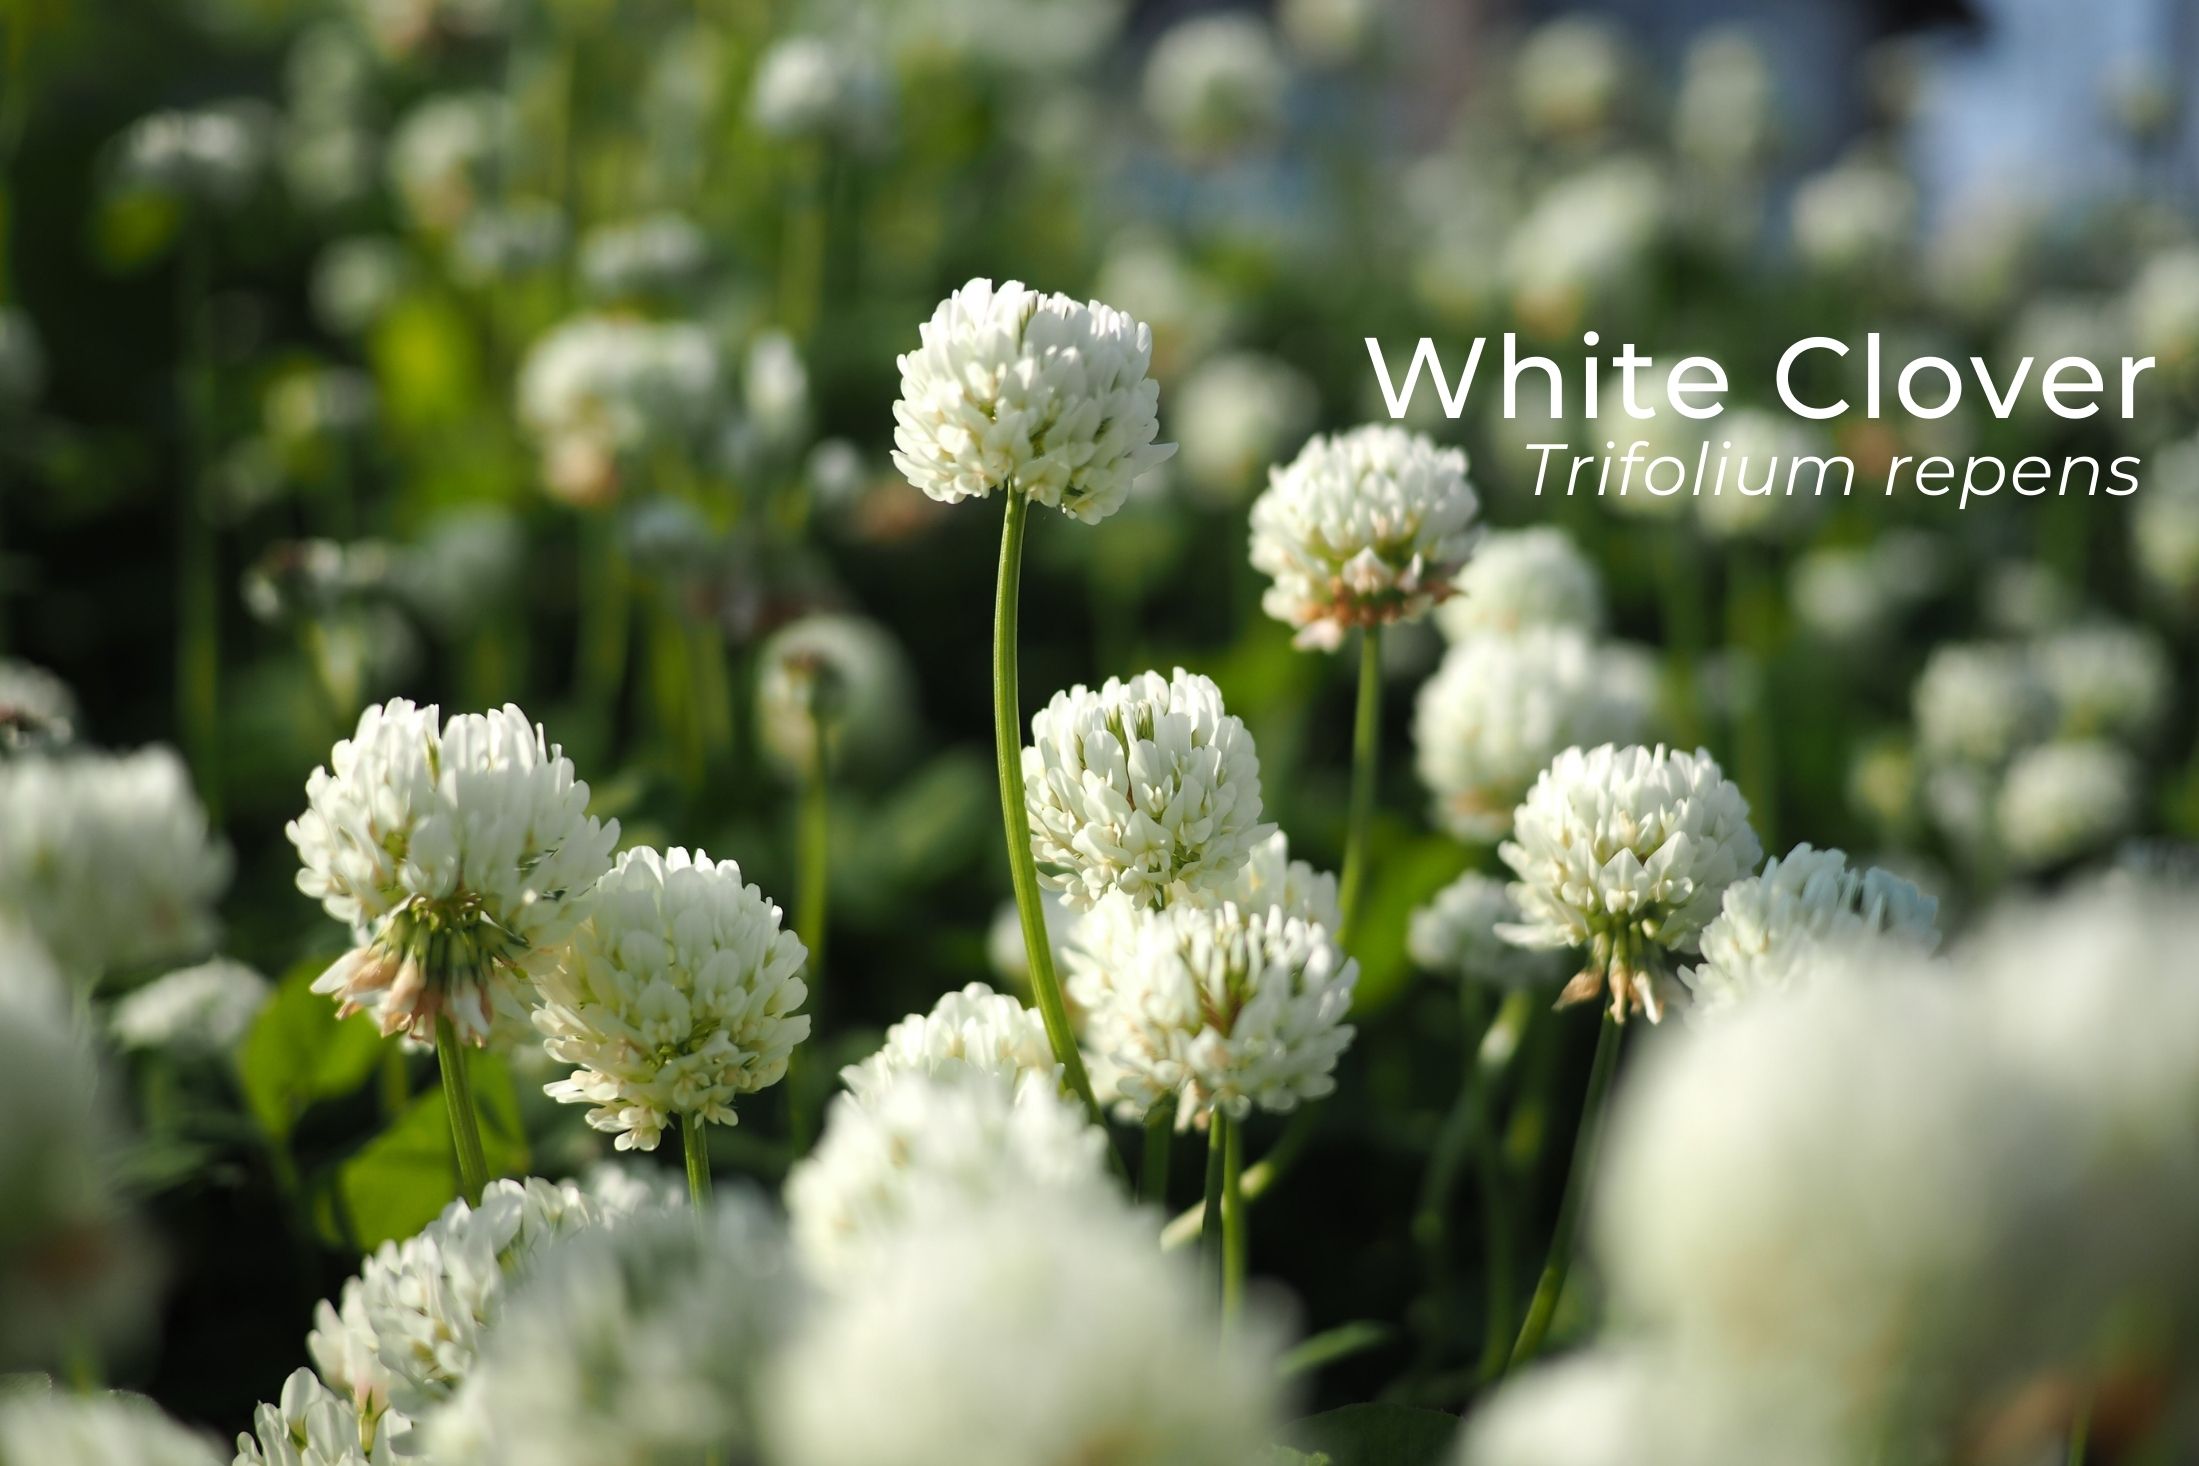 White clover flower in blossom at falkland estate.